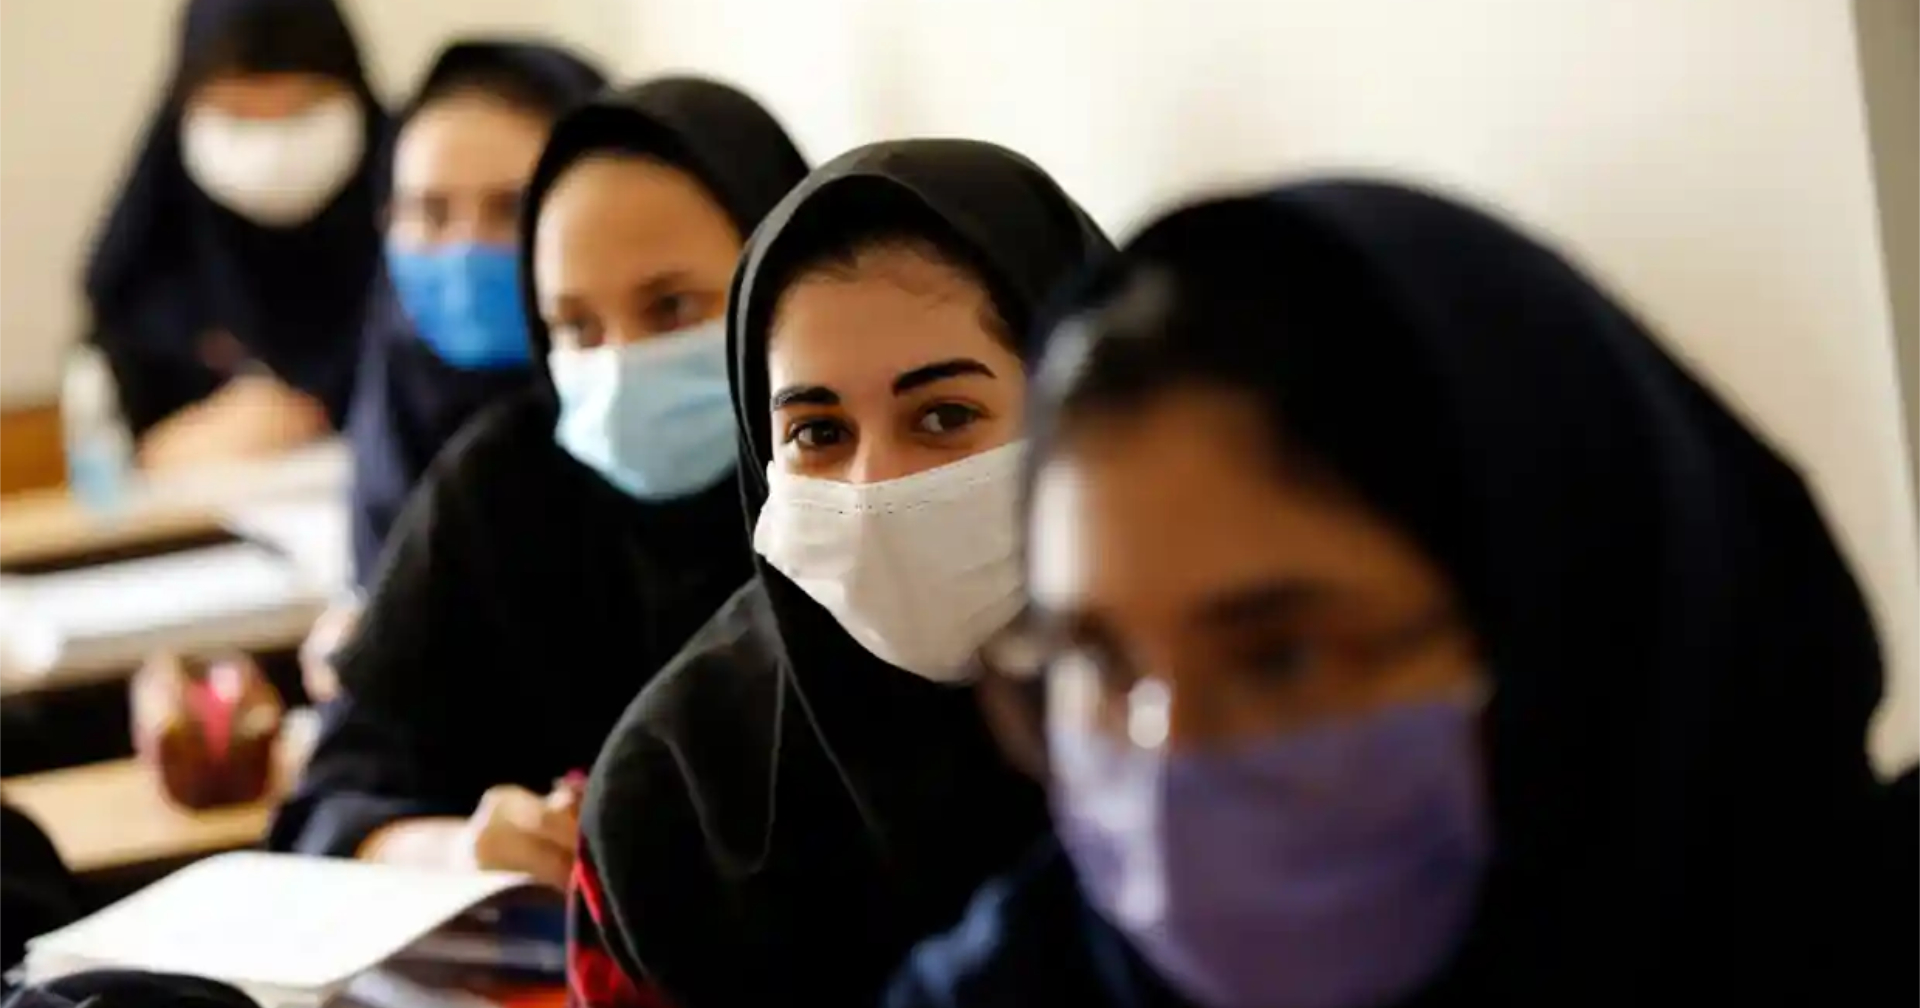 นักเรียนหญิงในอิหร่านตกเป็นเป้าการวางยาพิษนานกว่า 3 เดือน และรัฐบาลยังหาสาเหตุไม่ได้